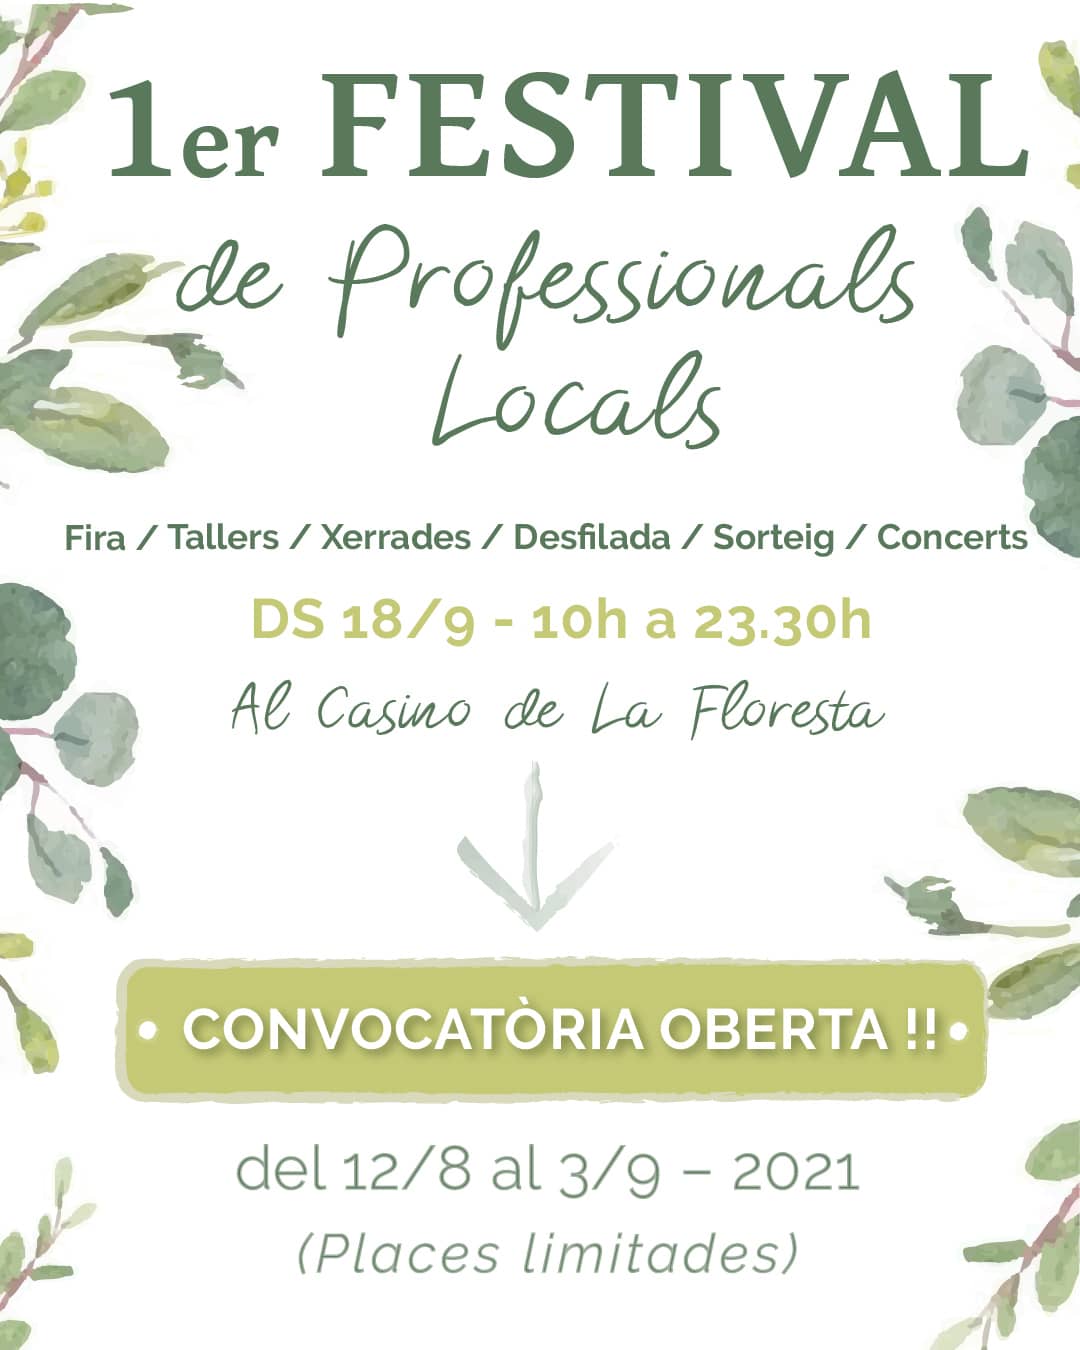 Inscripción abierta para el 1er Festival de Profesionales Locales